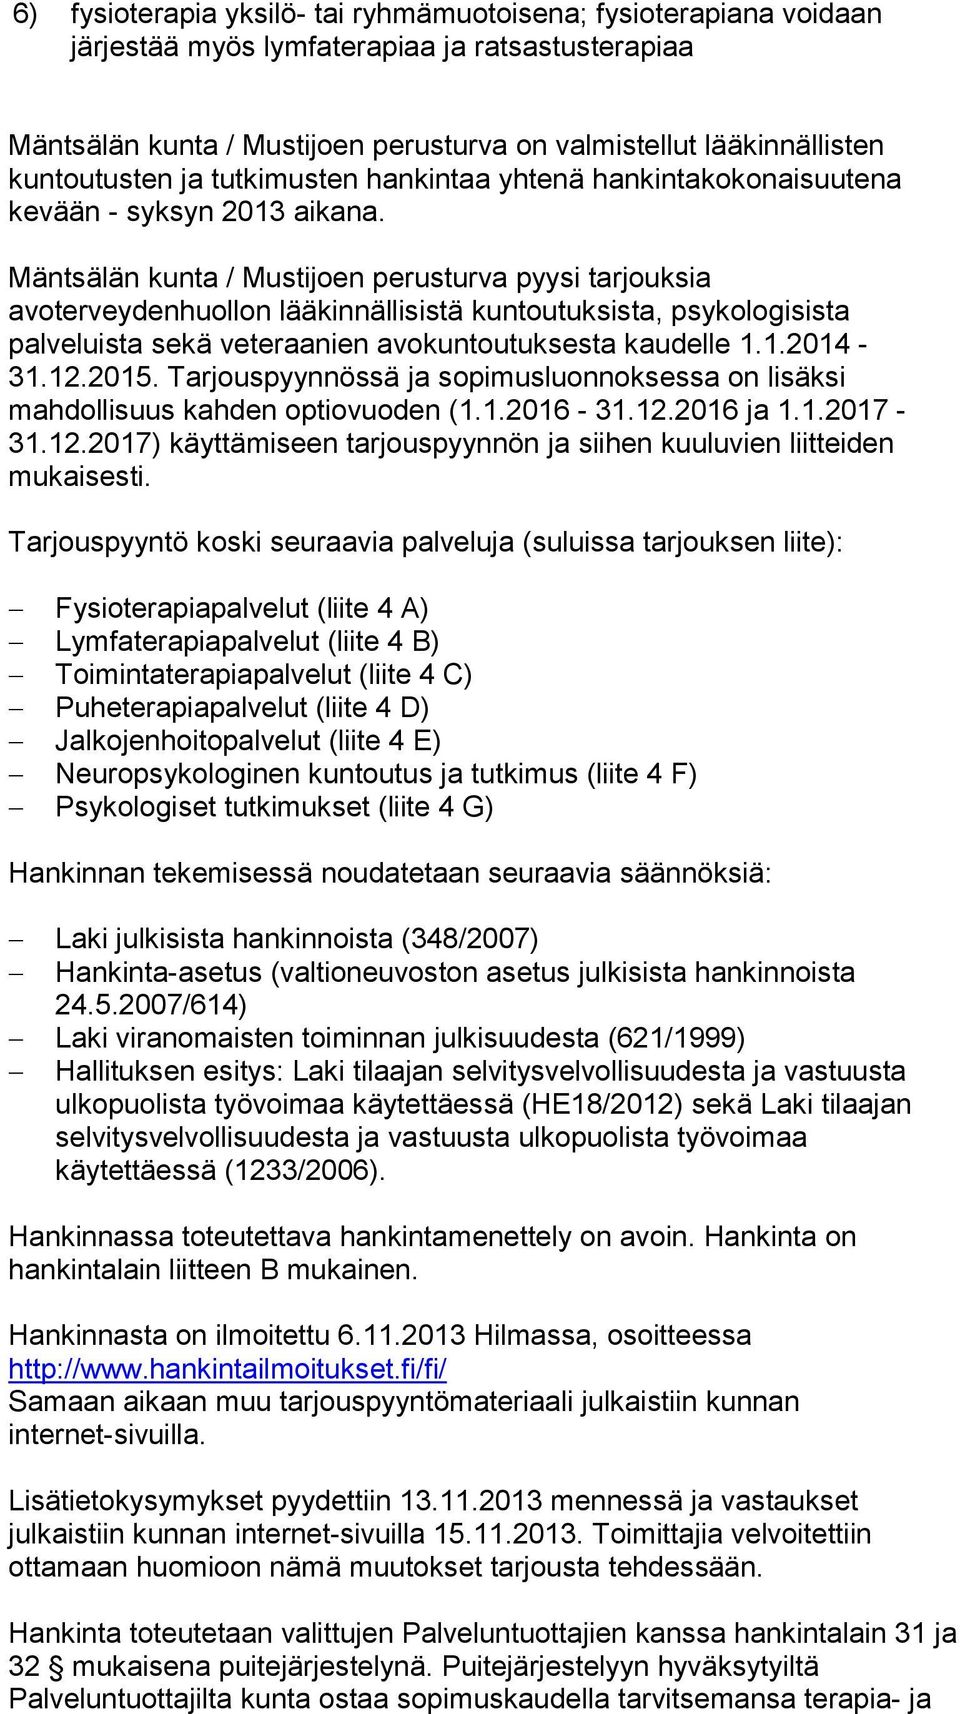 Mäntsälän kunta / Mustijoen perusturva pyysi tarjouksia avoterveydenhuollon lääkinnällisistä kuntoutuksista, psykologisista palveluista sekä veteraanien avokuntoutuksesta kaudelle 1.1.2014-31.12.2015.